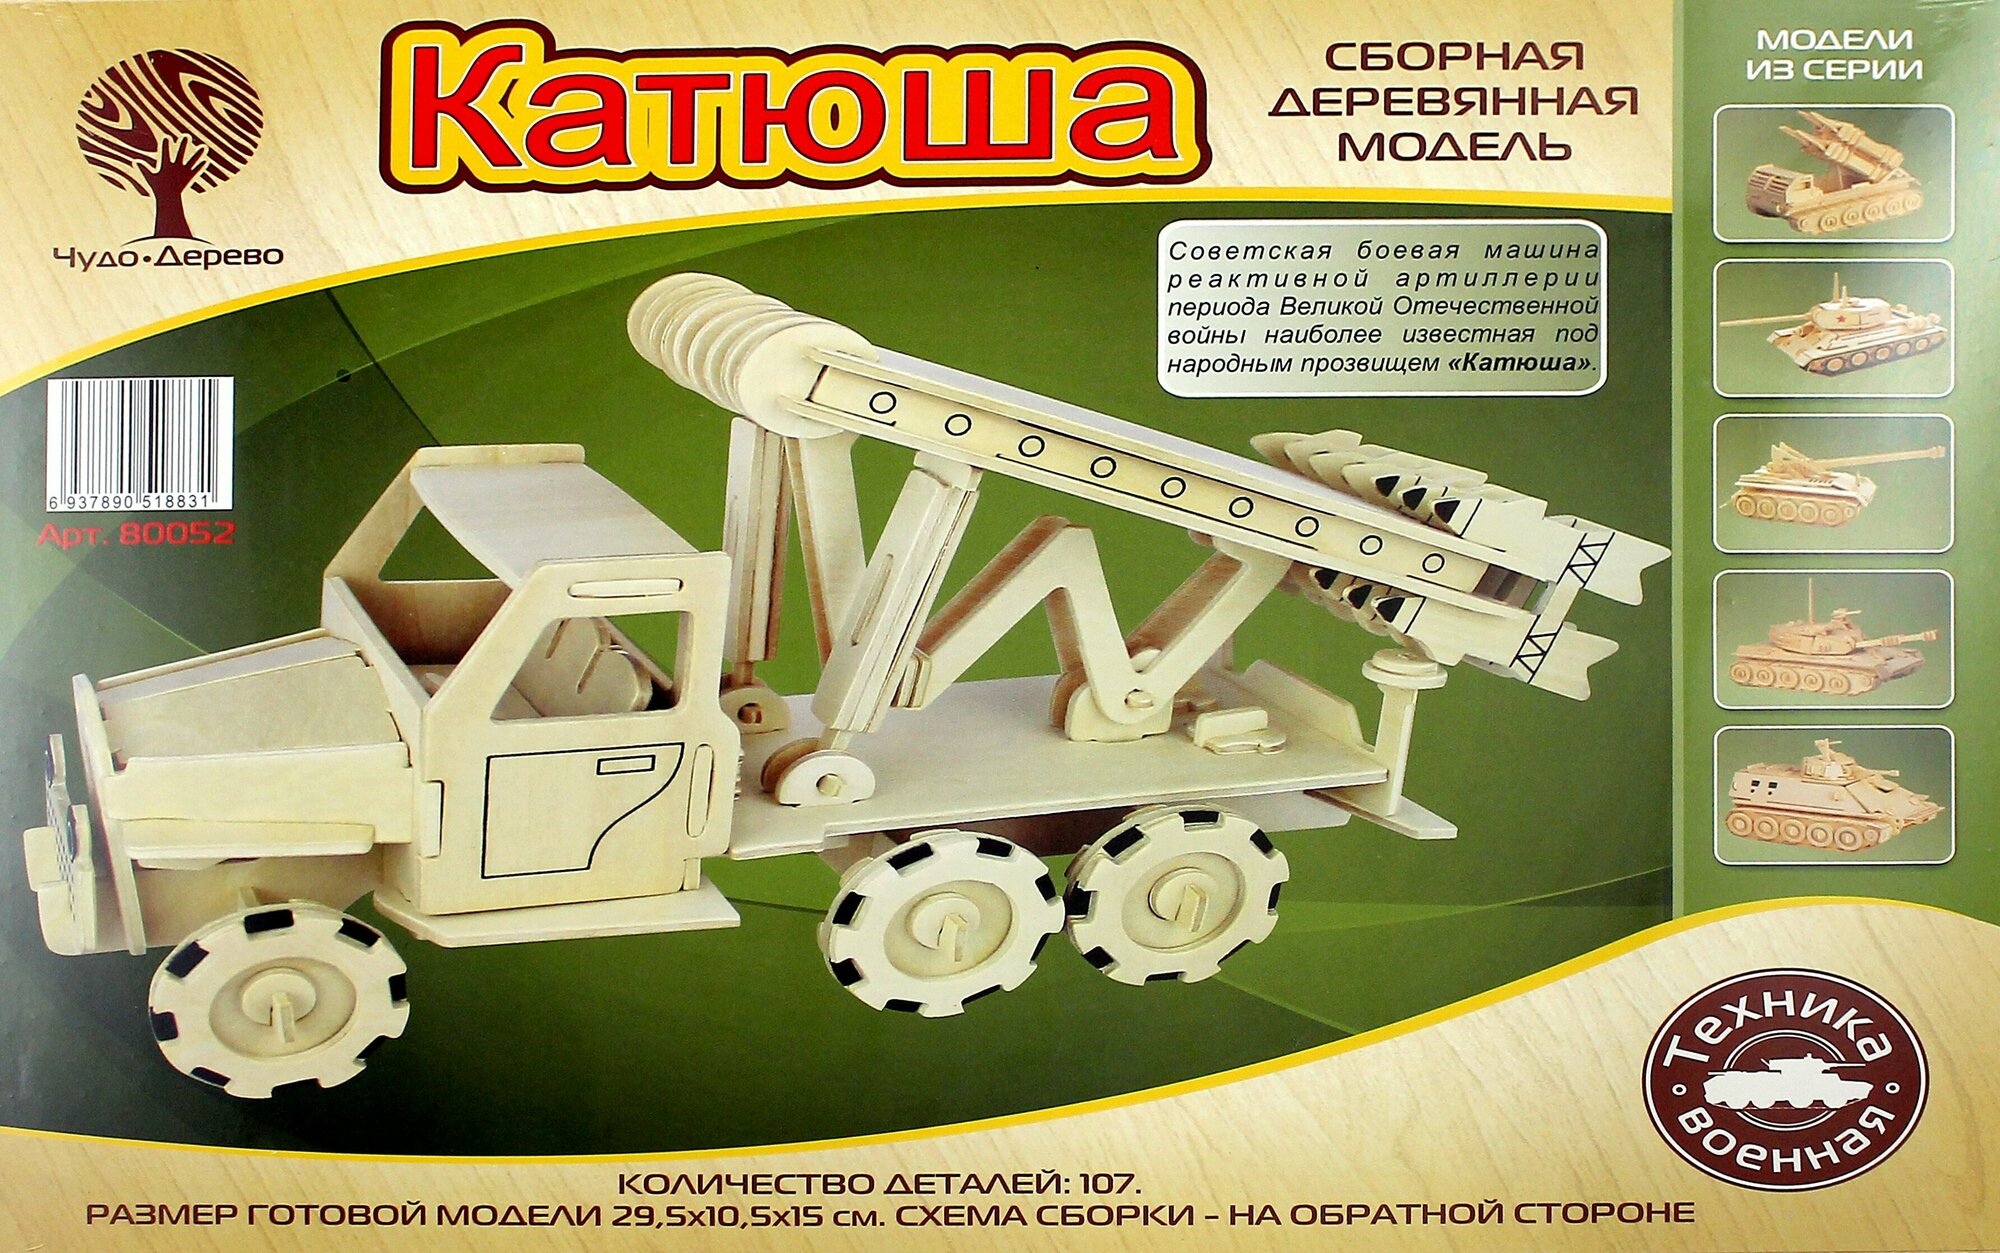 Сборная деревянная модель. "Катюша" (80052) - фото №3